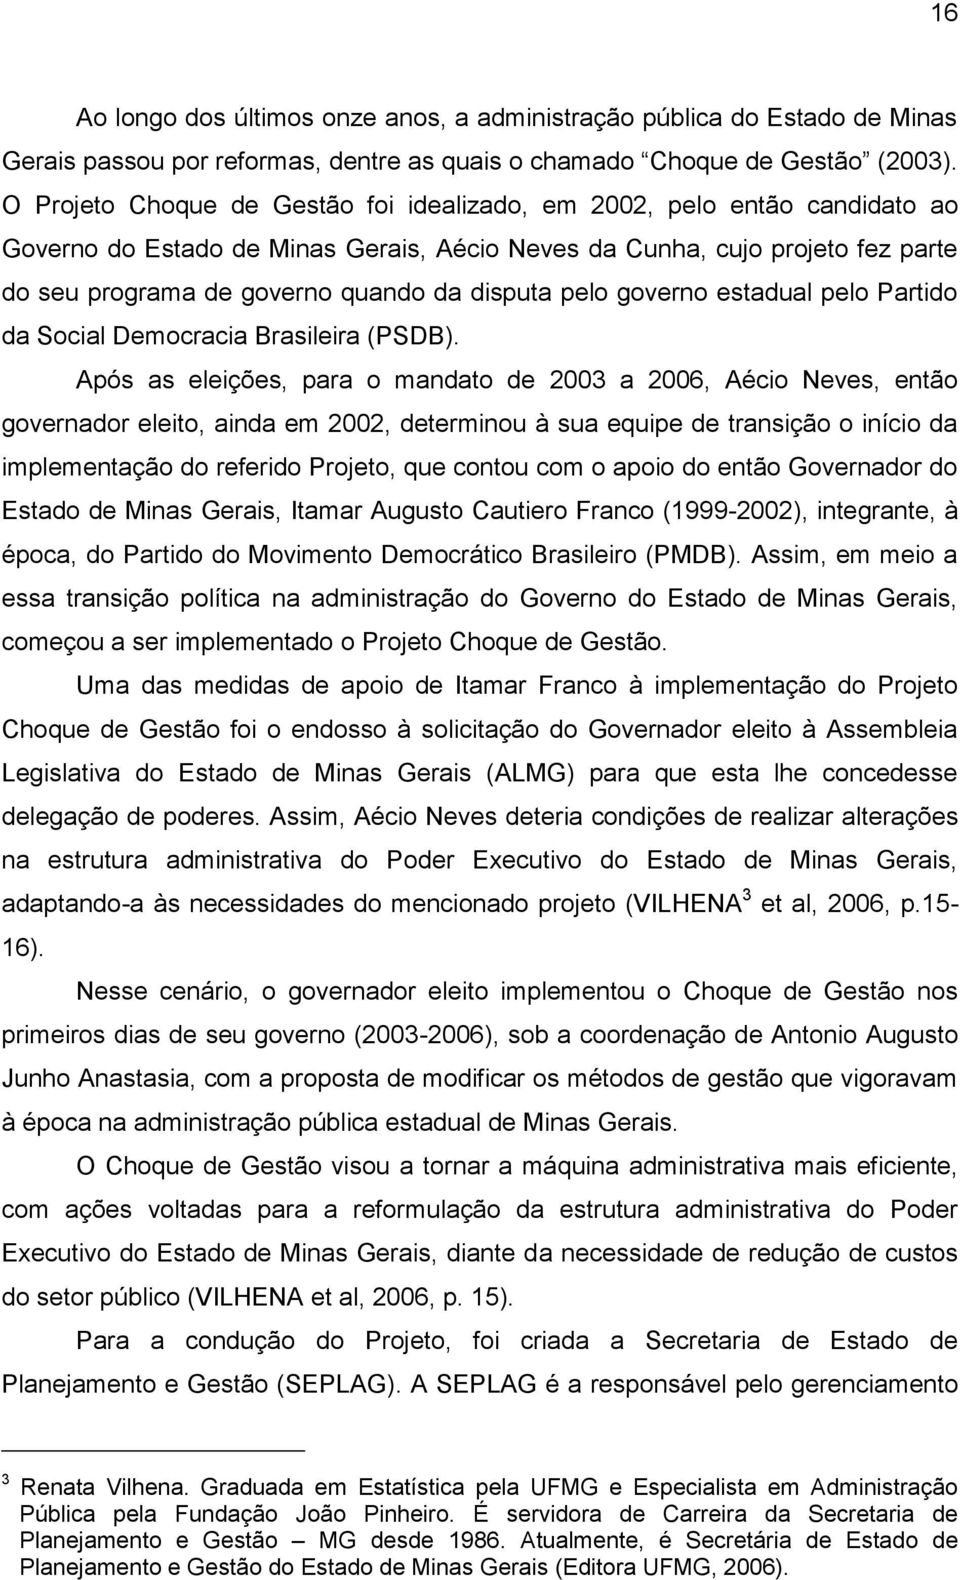 disputa pelo governo estadual pelo Partido da Social Democracia Brasileira (PSDB).